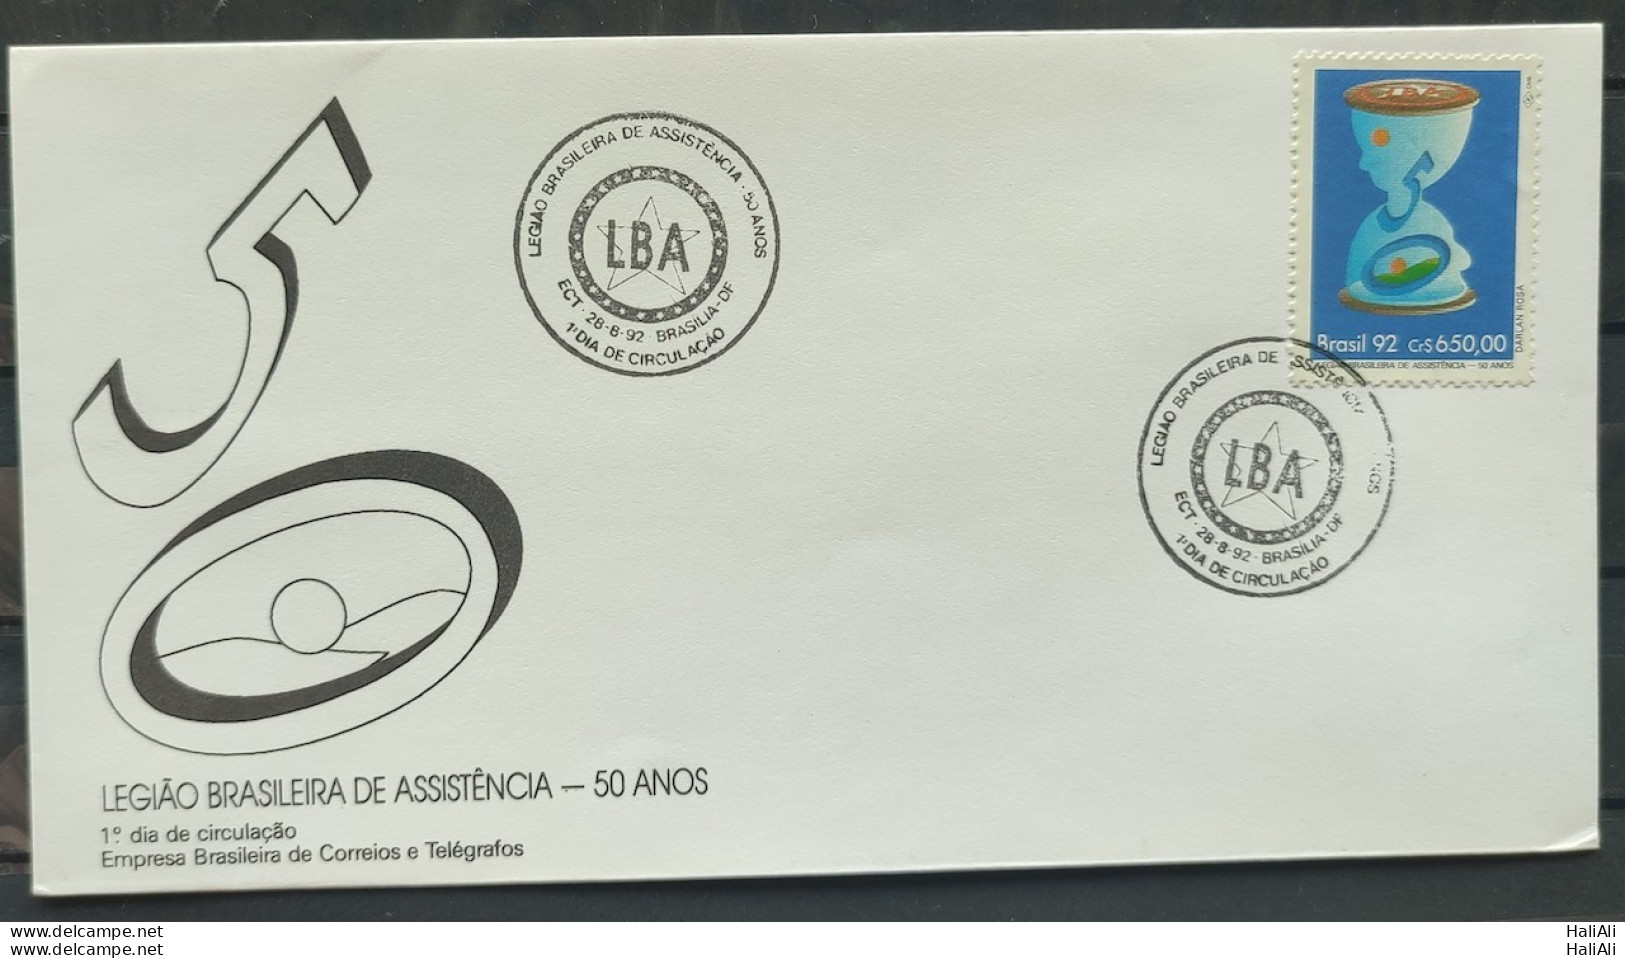 Brazil Envelope FDC 575 1992 Brazilian Legion Assistance Military Economy Previdencia CBC DF - FDC